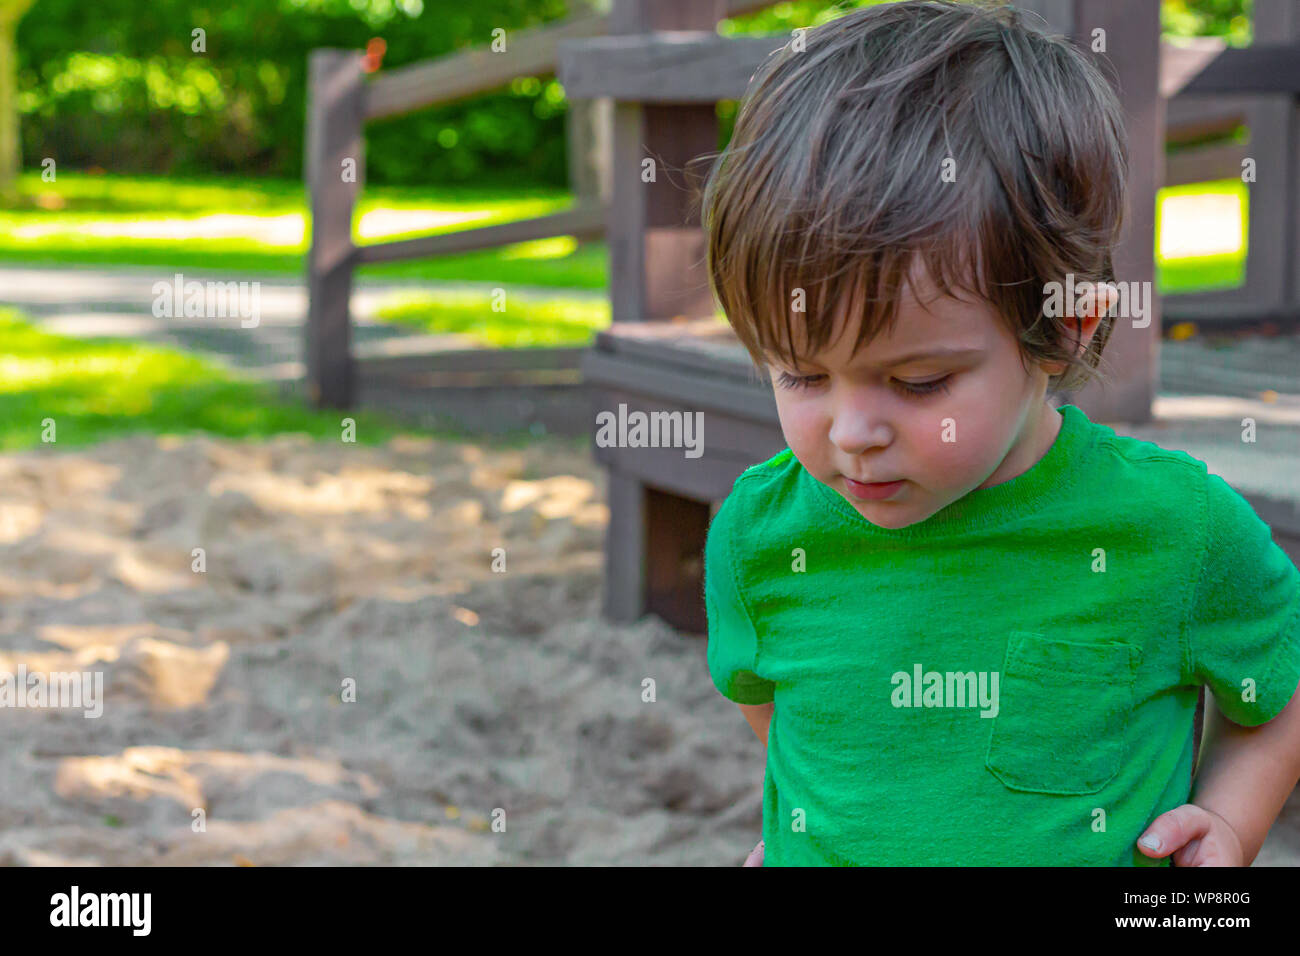 Un bambino in una camicia verde, a circa due anni di età, sorge nella sabbia di un parco giochi ma sembra essere nel profondo del pensiero. Foto Stock